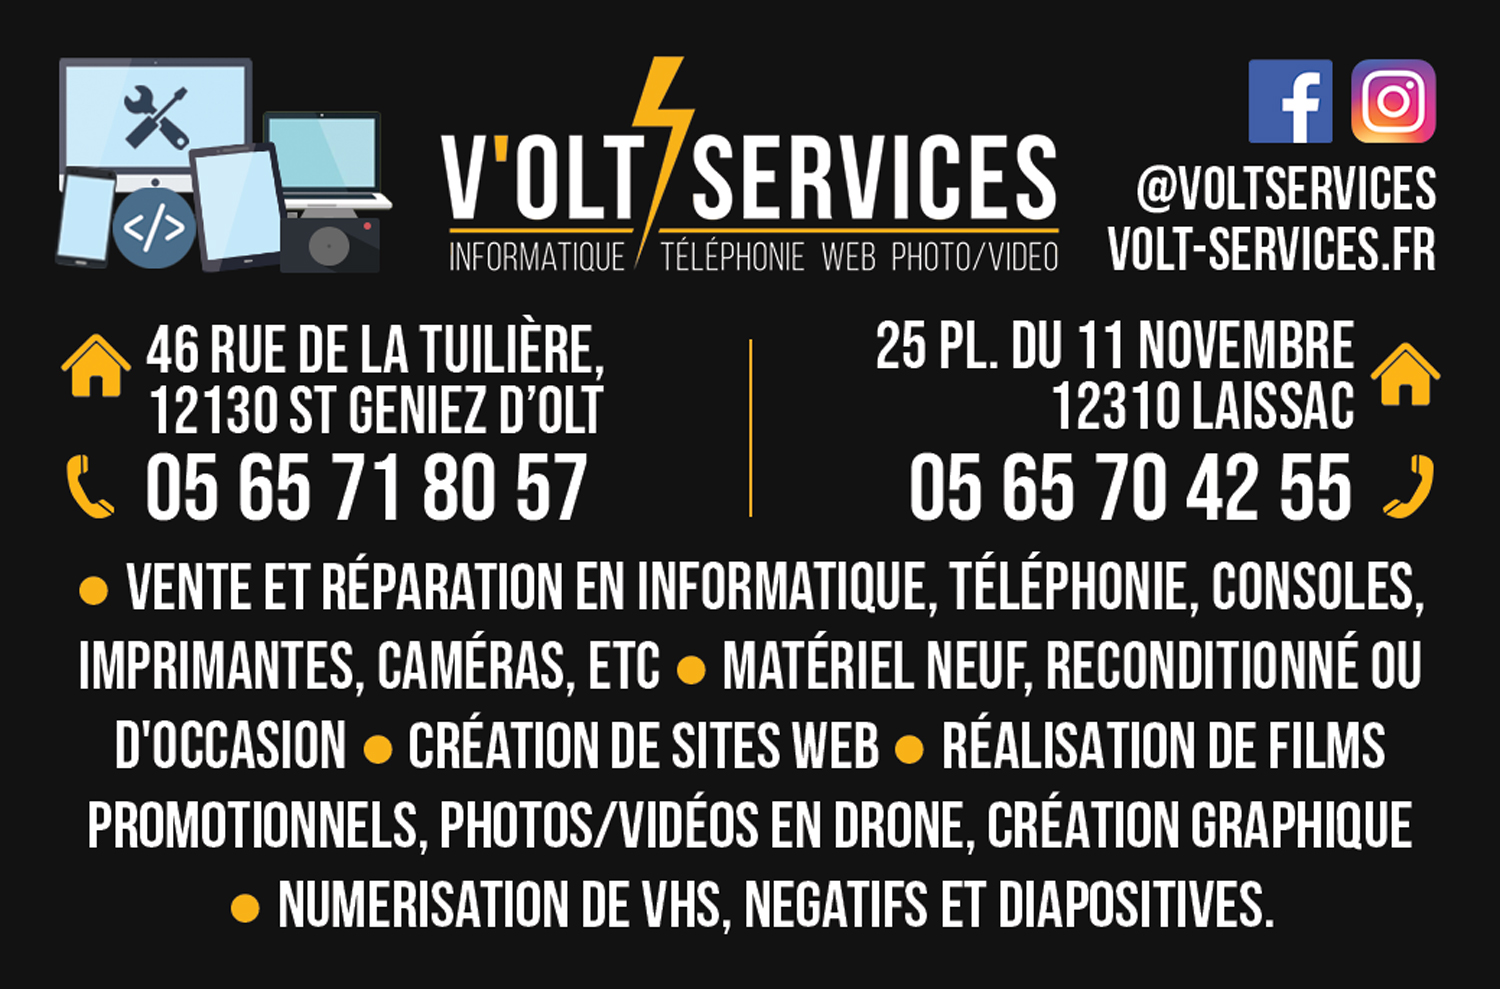 Volt services